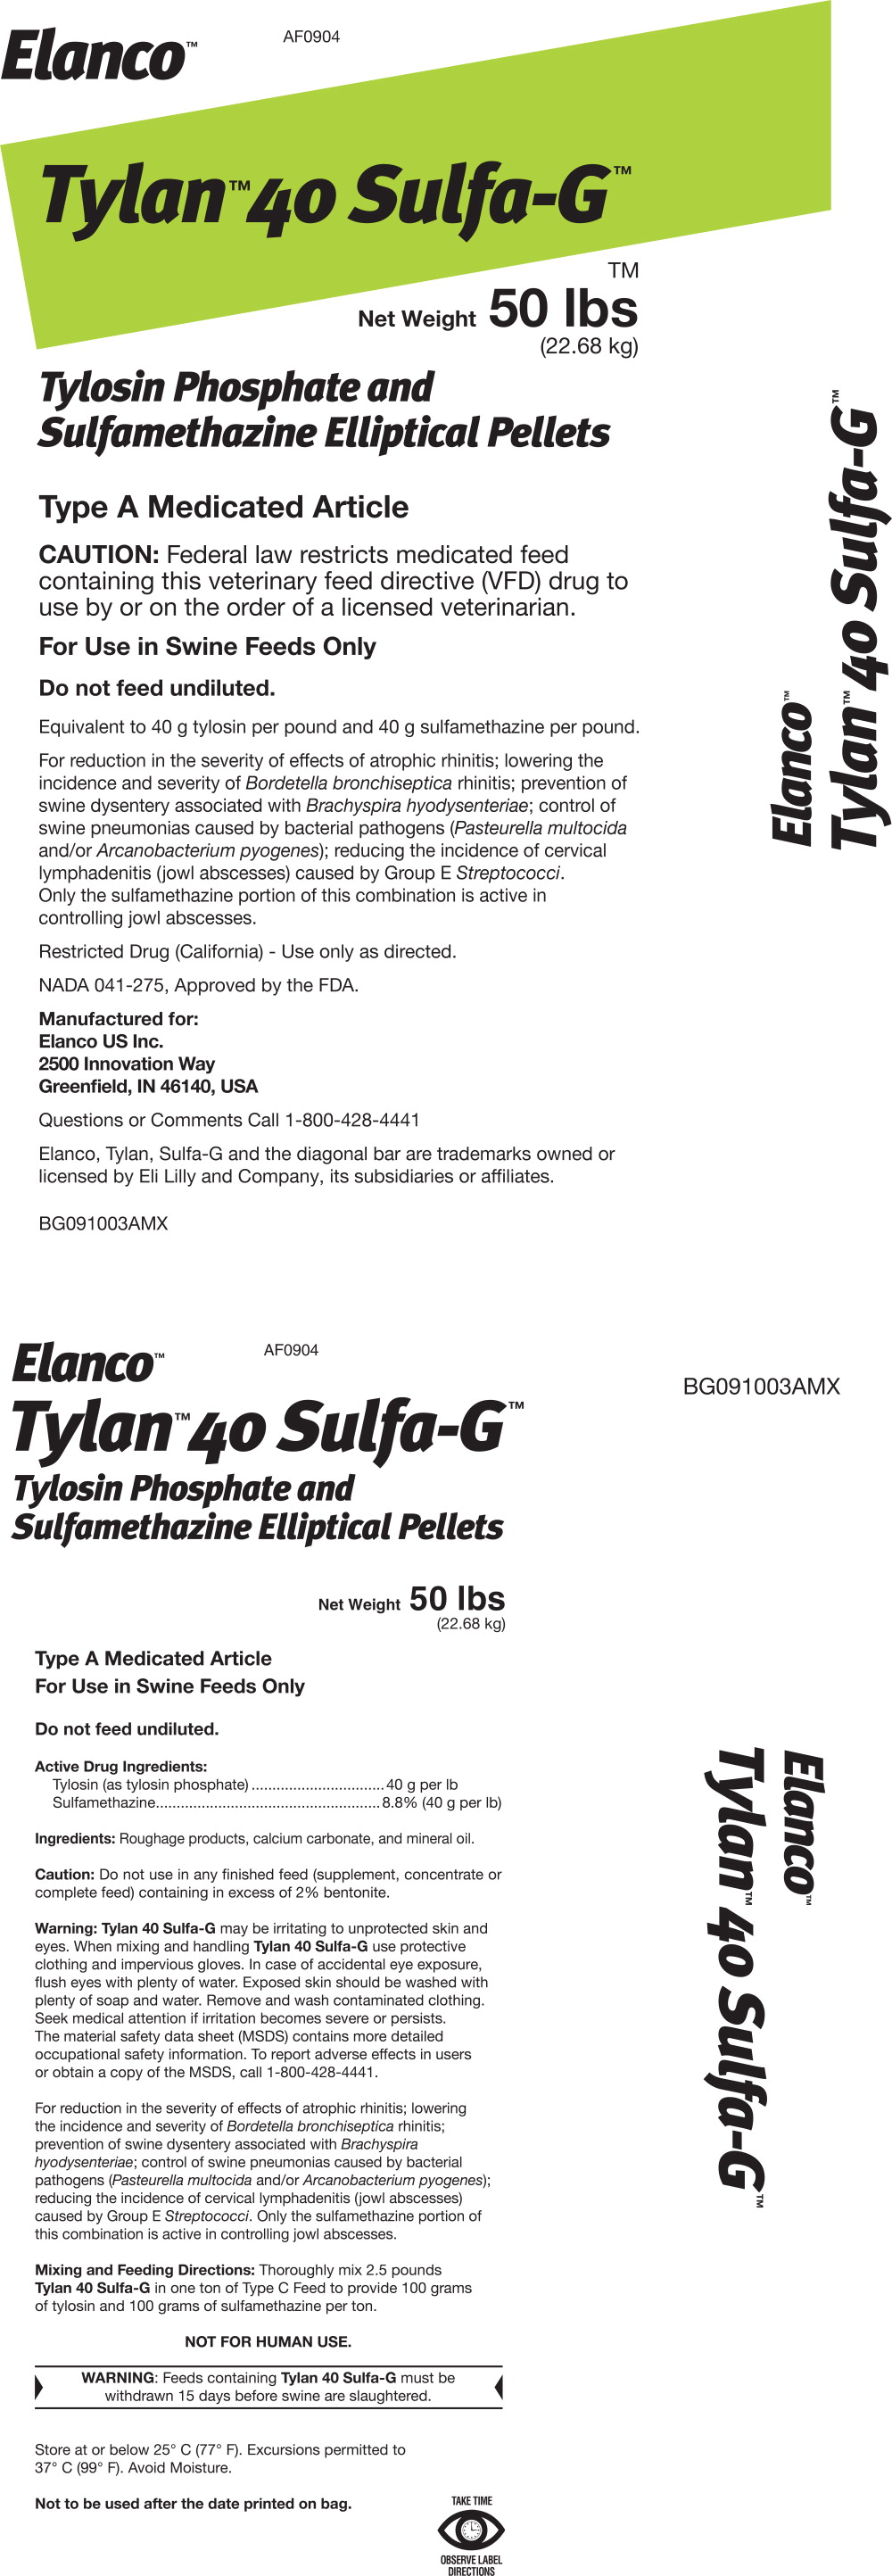 Principal Display Panel - Tylan 40 Sulfa-G Bag Label
